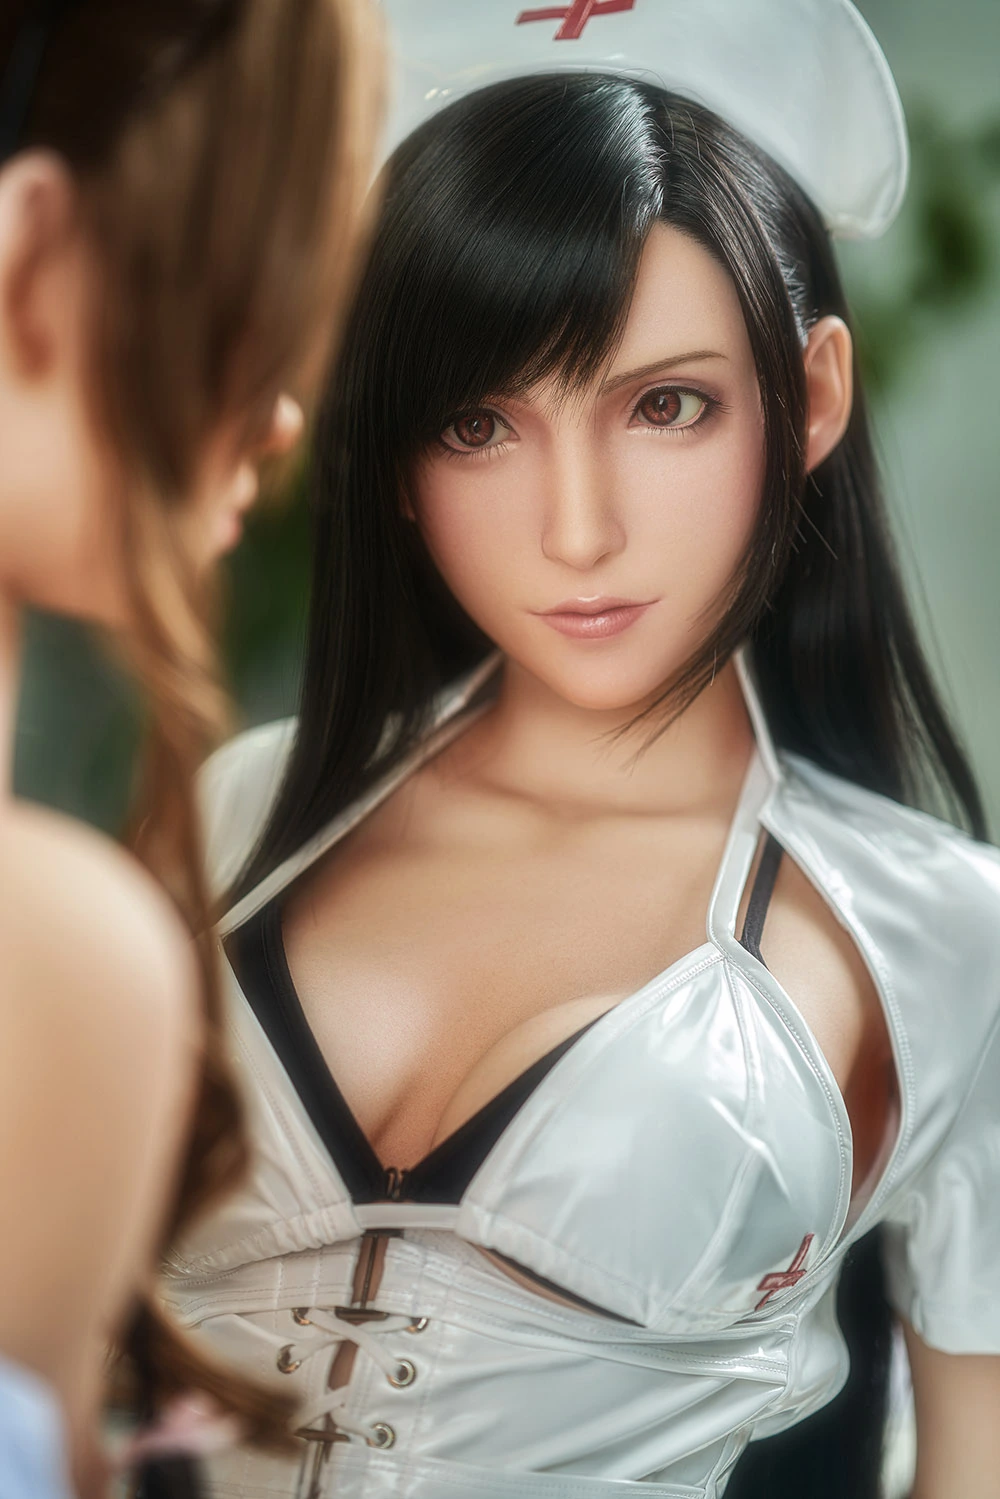 Tifa and Aerith -Final Fantasy 167cm/5ft5 curvy sex doll wearing nurse uniform